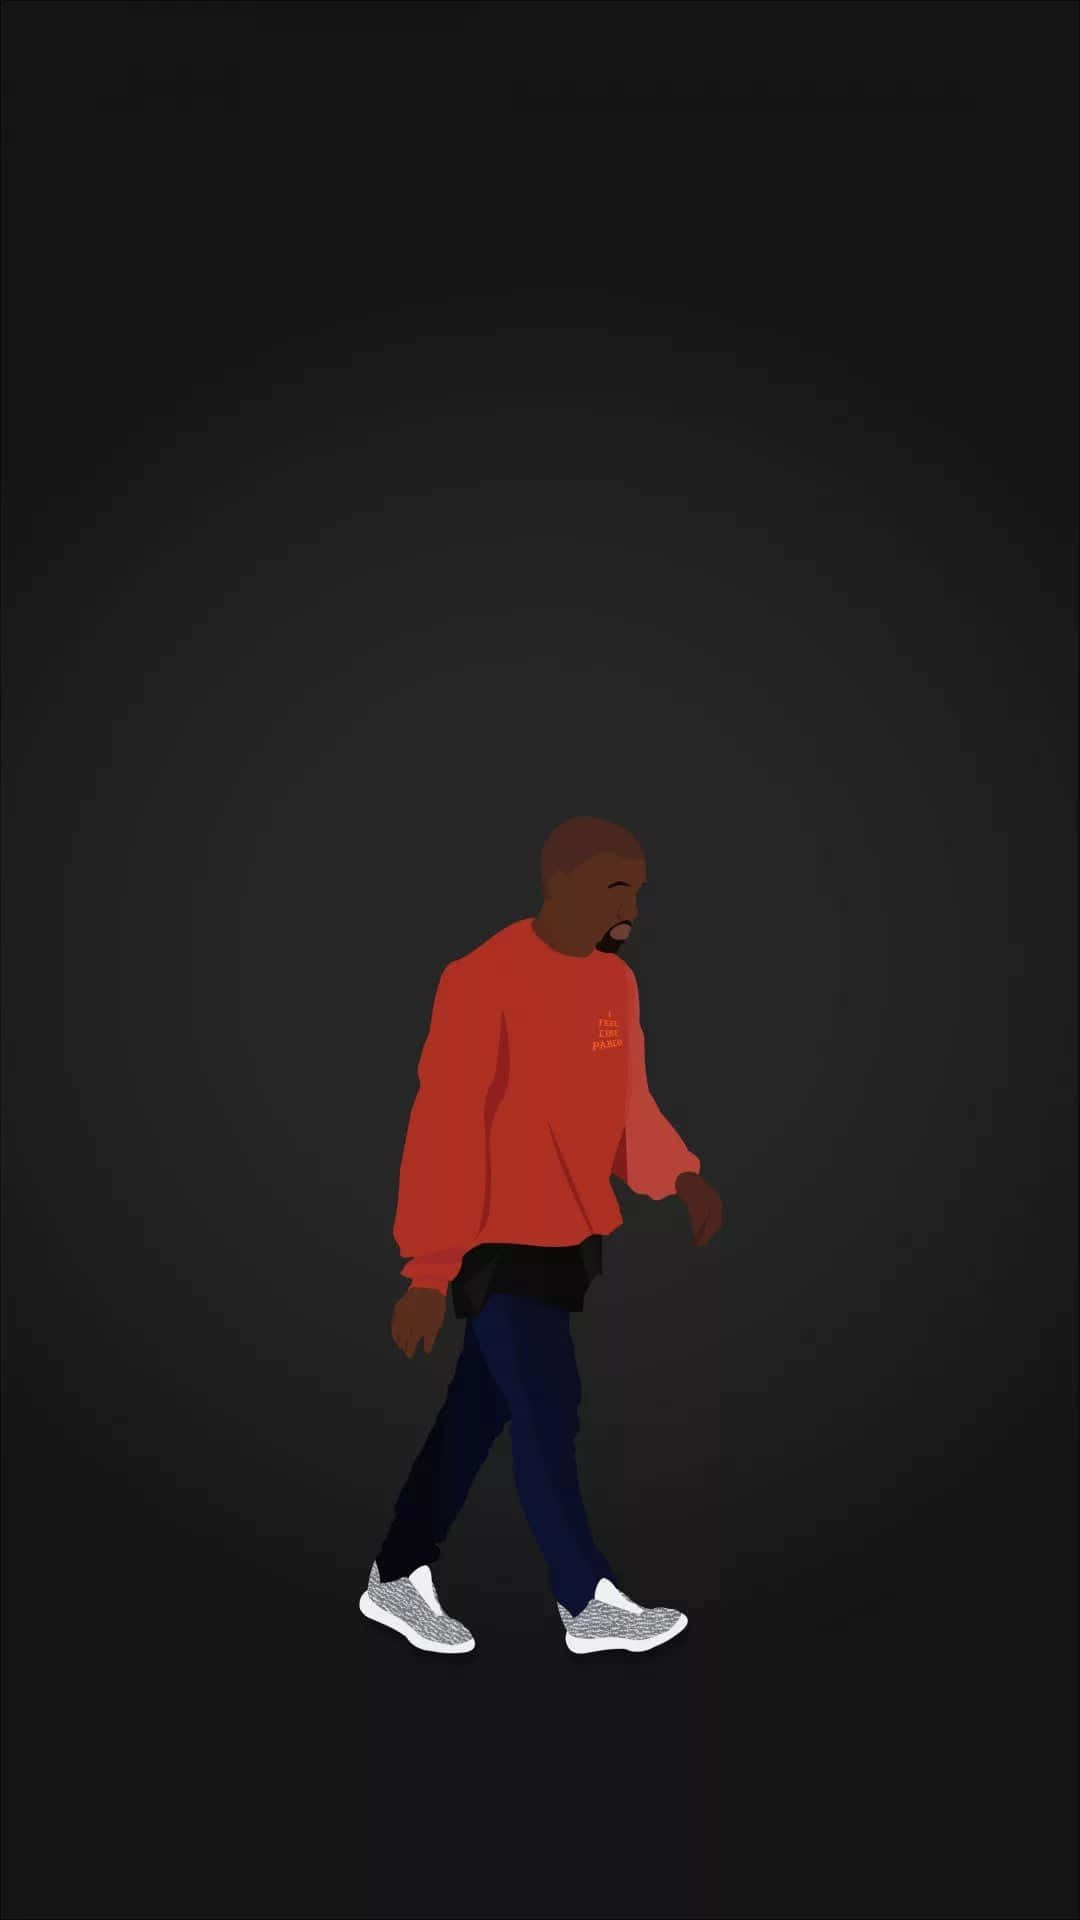 Schaudir Das Neueste Kanye-design Für Das Iphone An Wallpaper